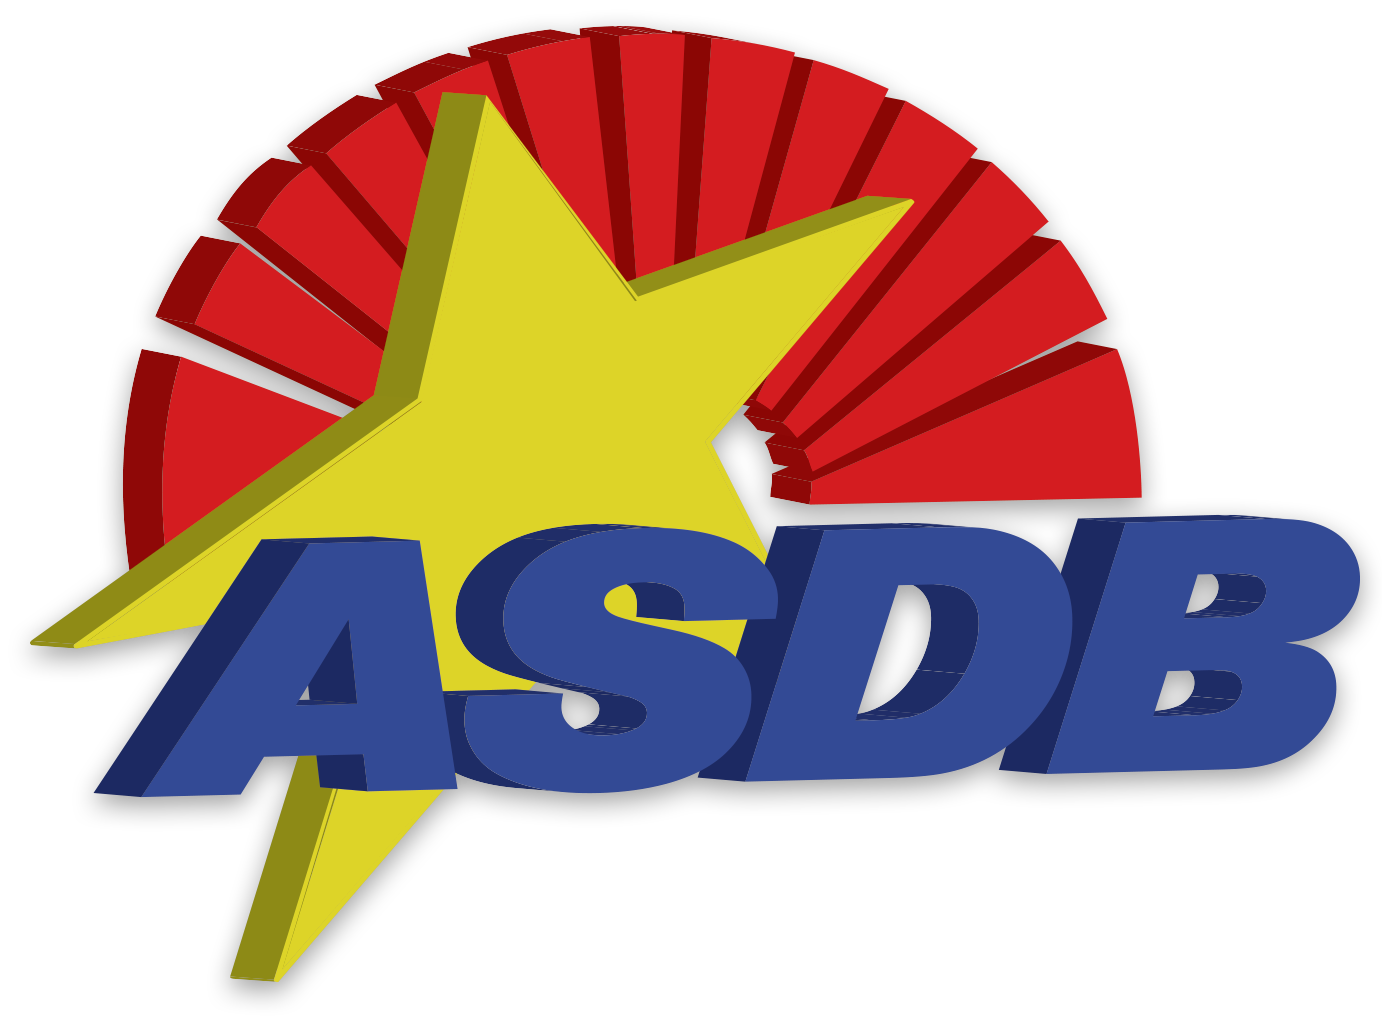 ASDB 3D Logo